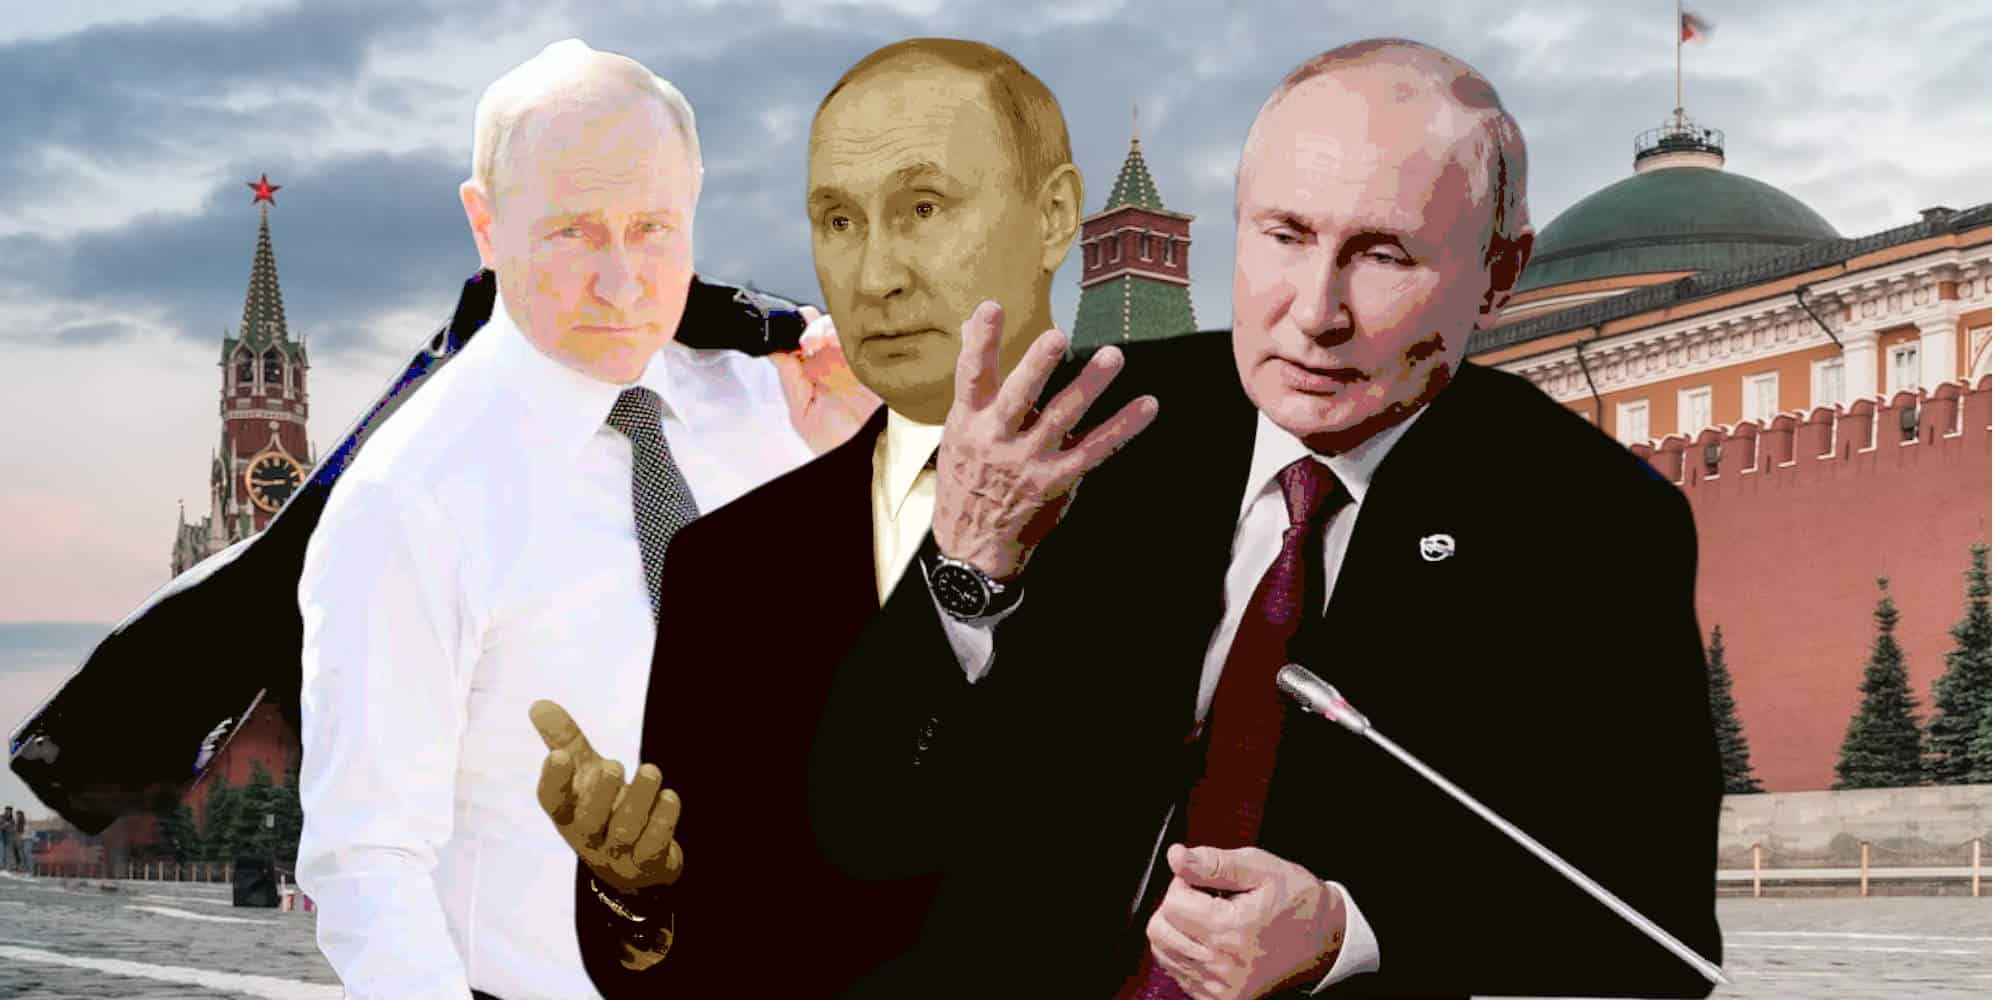 Έχει ο Βλαντιμίρ Πούτιν σωσίες;